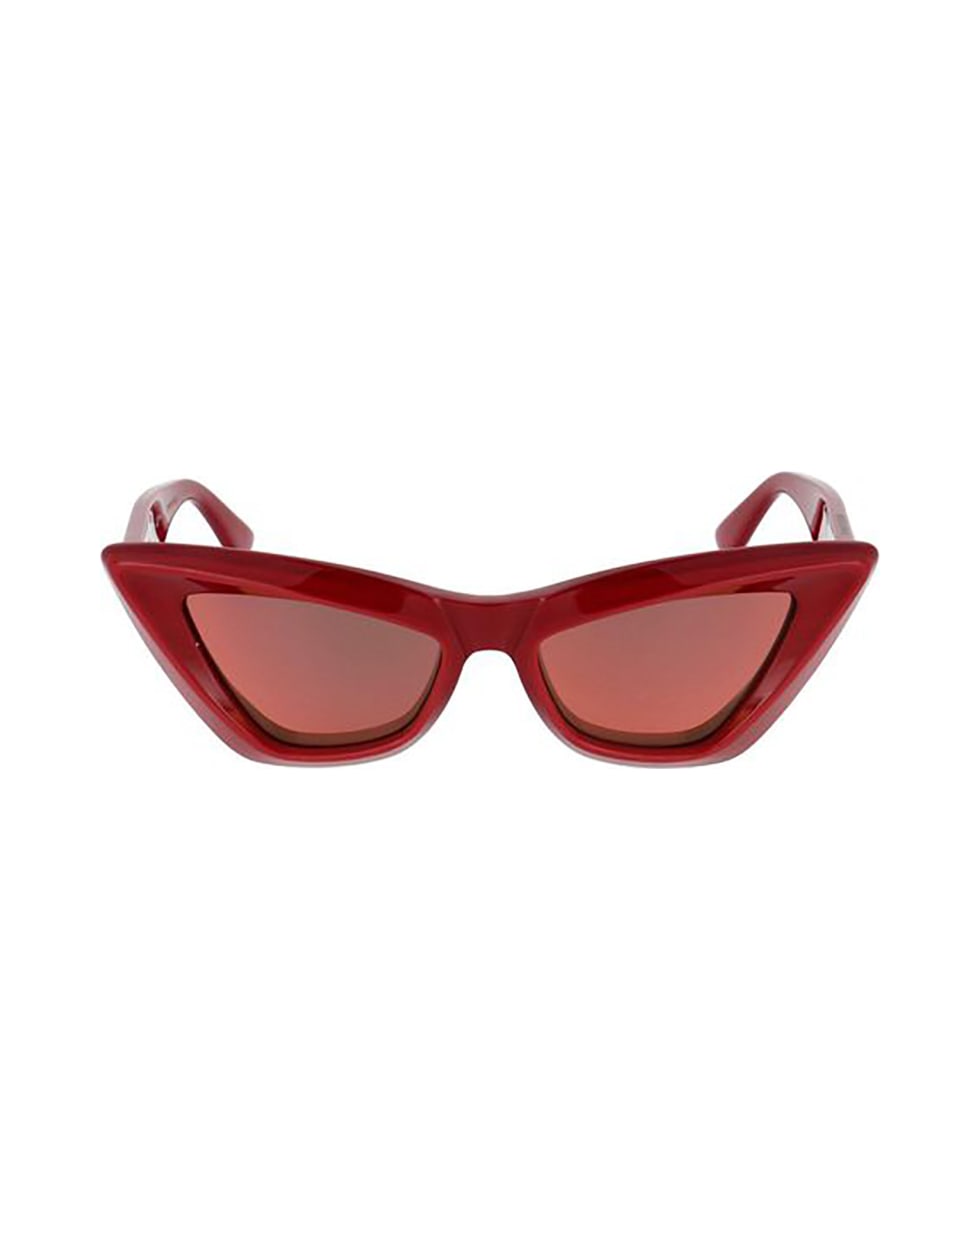 Bottega Veneta Eyewear 17ep40r0a - Red Red Red